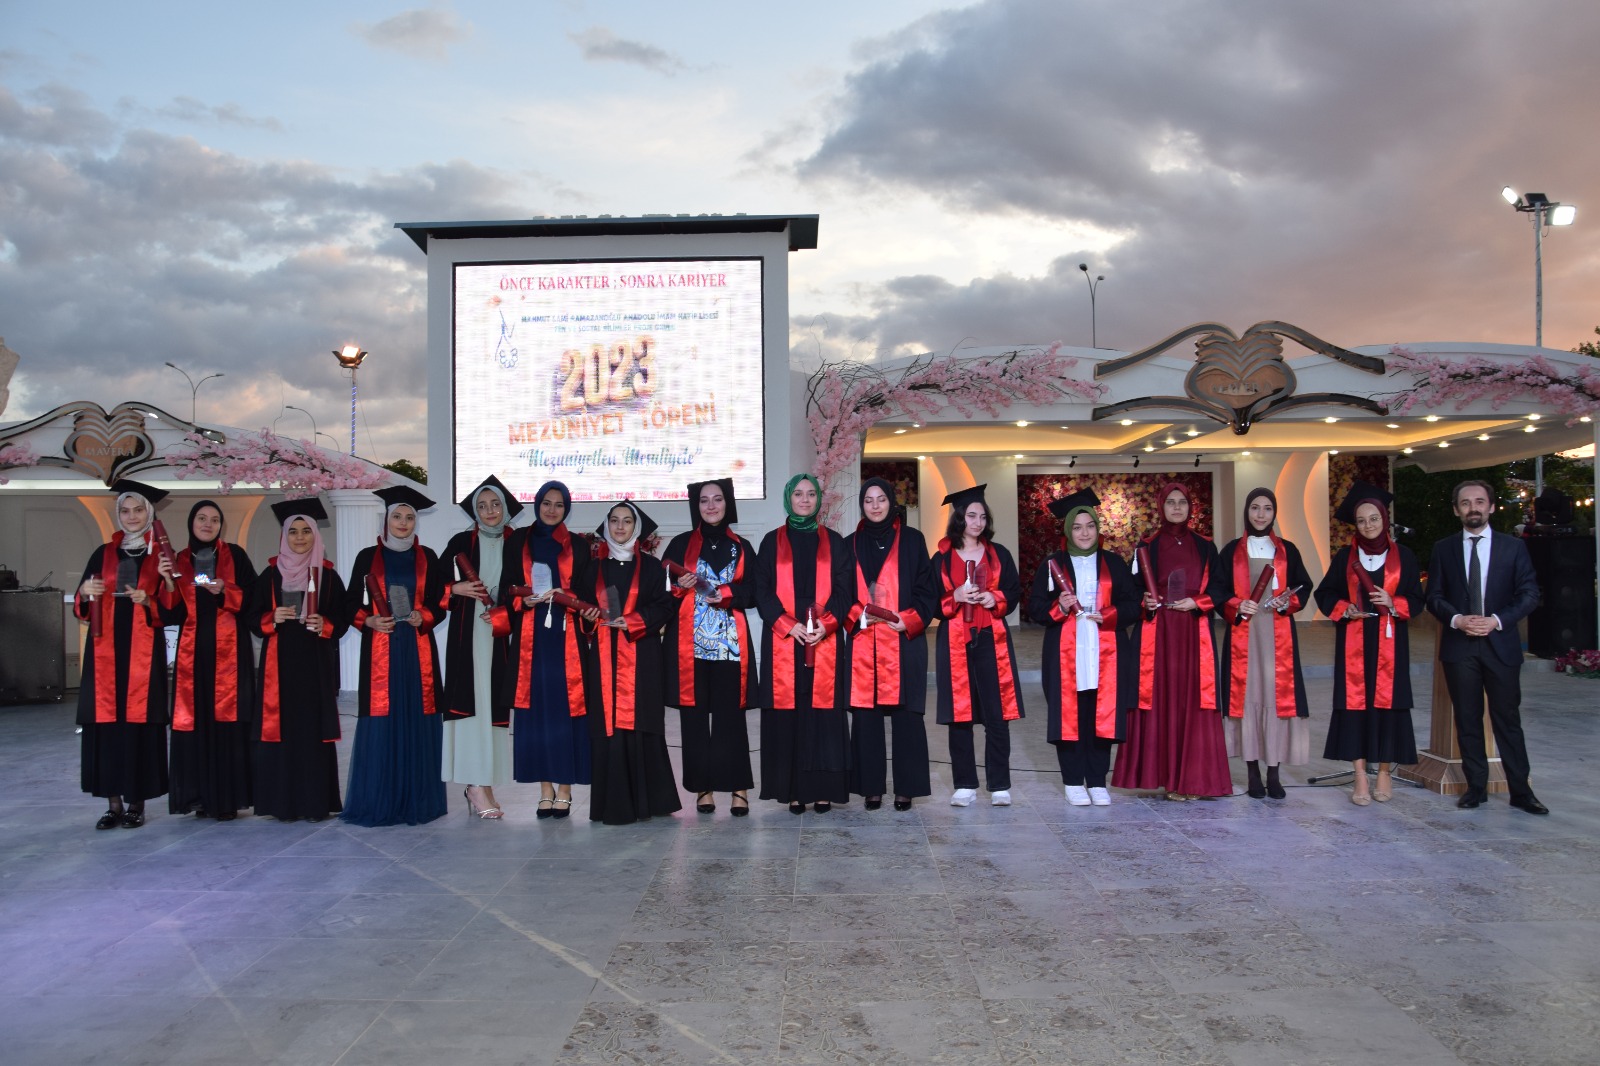 Mahmut Sami Ramazanoğlu Anadolu İmam Hatip Lisesi’nden muhteşem mezuniyet töreni (3)